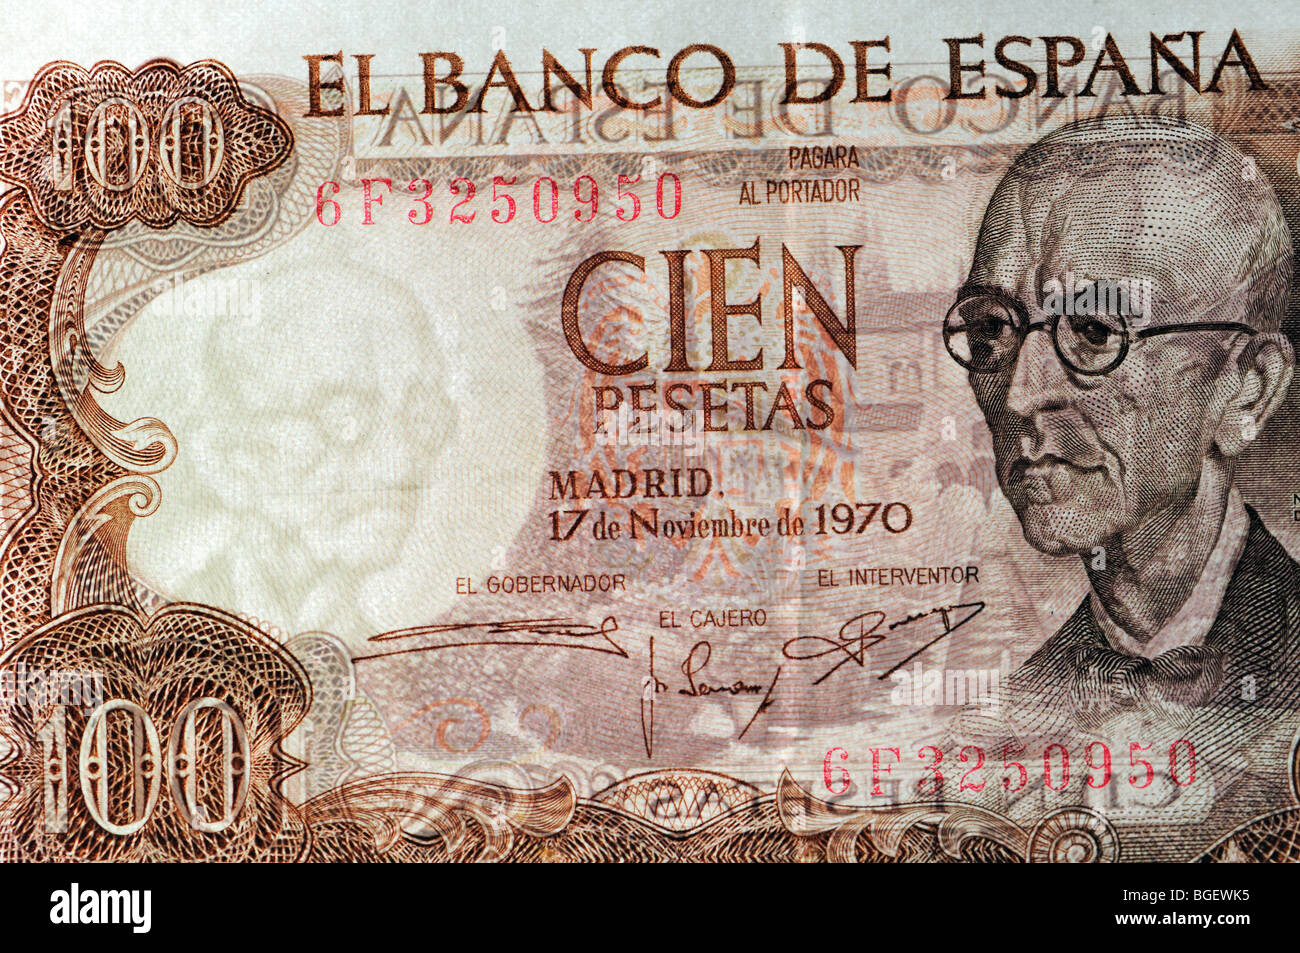 Billet de 100 pesetas espagnoles de 1970 montrant le filigrane illustrant Manuel de Falla Banque D'Images